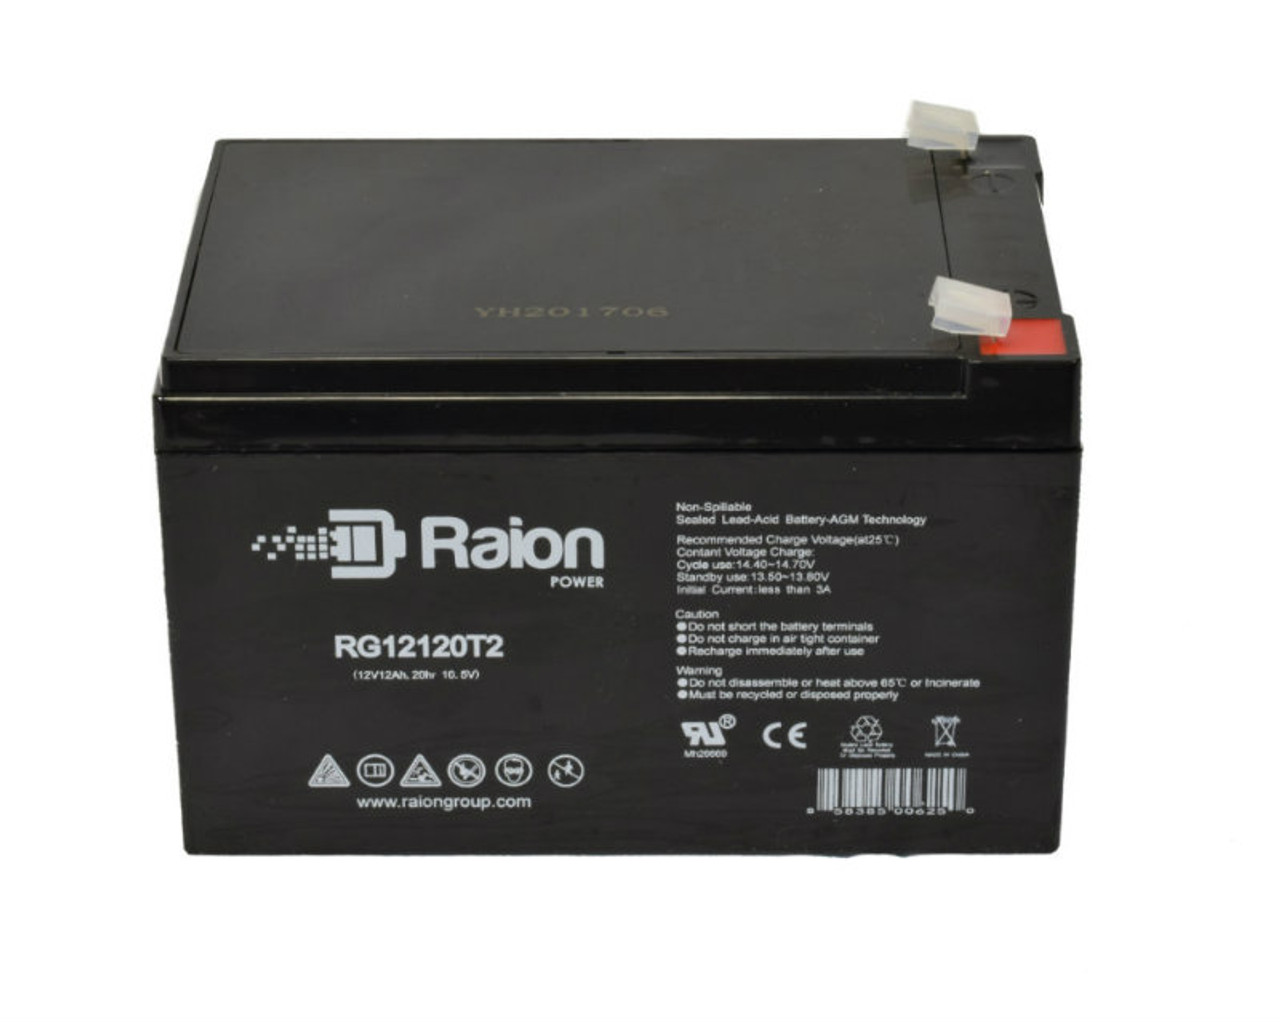 Raion Power RG12120T2 SLA Battery for SigmasTek SP12-15